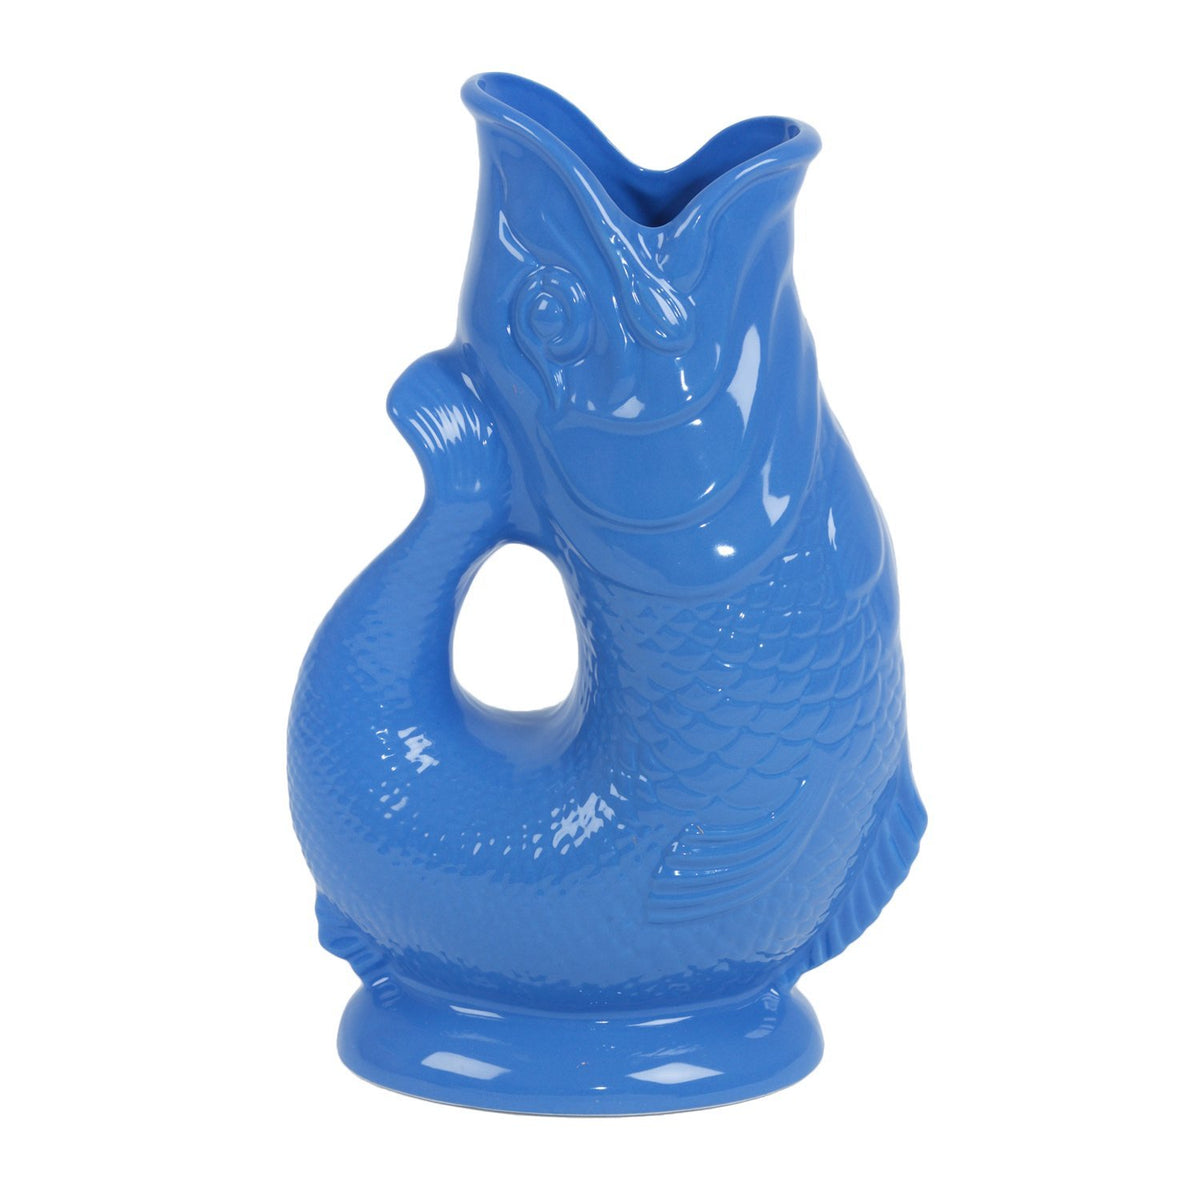 Sea Blue Ceramic Gluggle Jug - Extra Large 1.3L